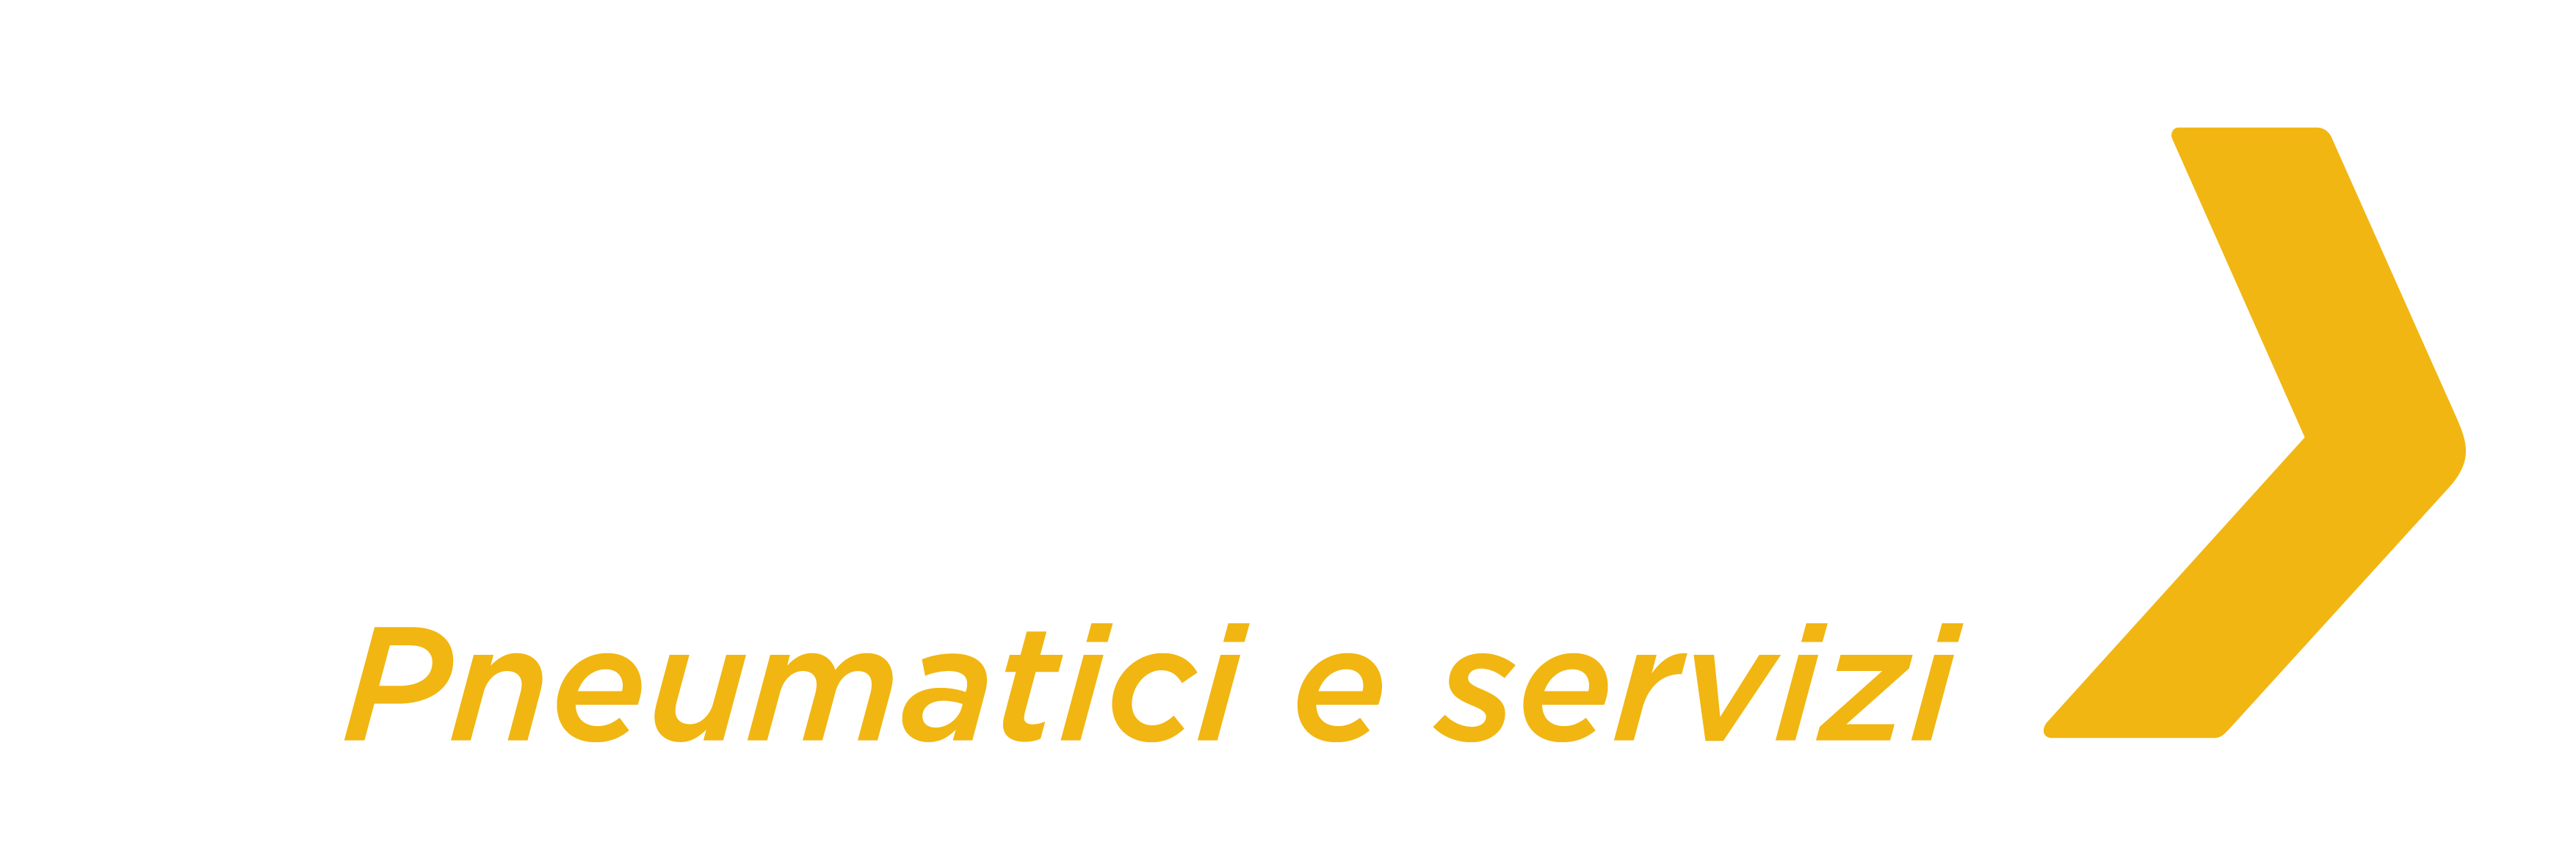 Logo Kwikf Fit pneumatici e servizi